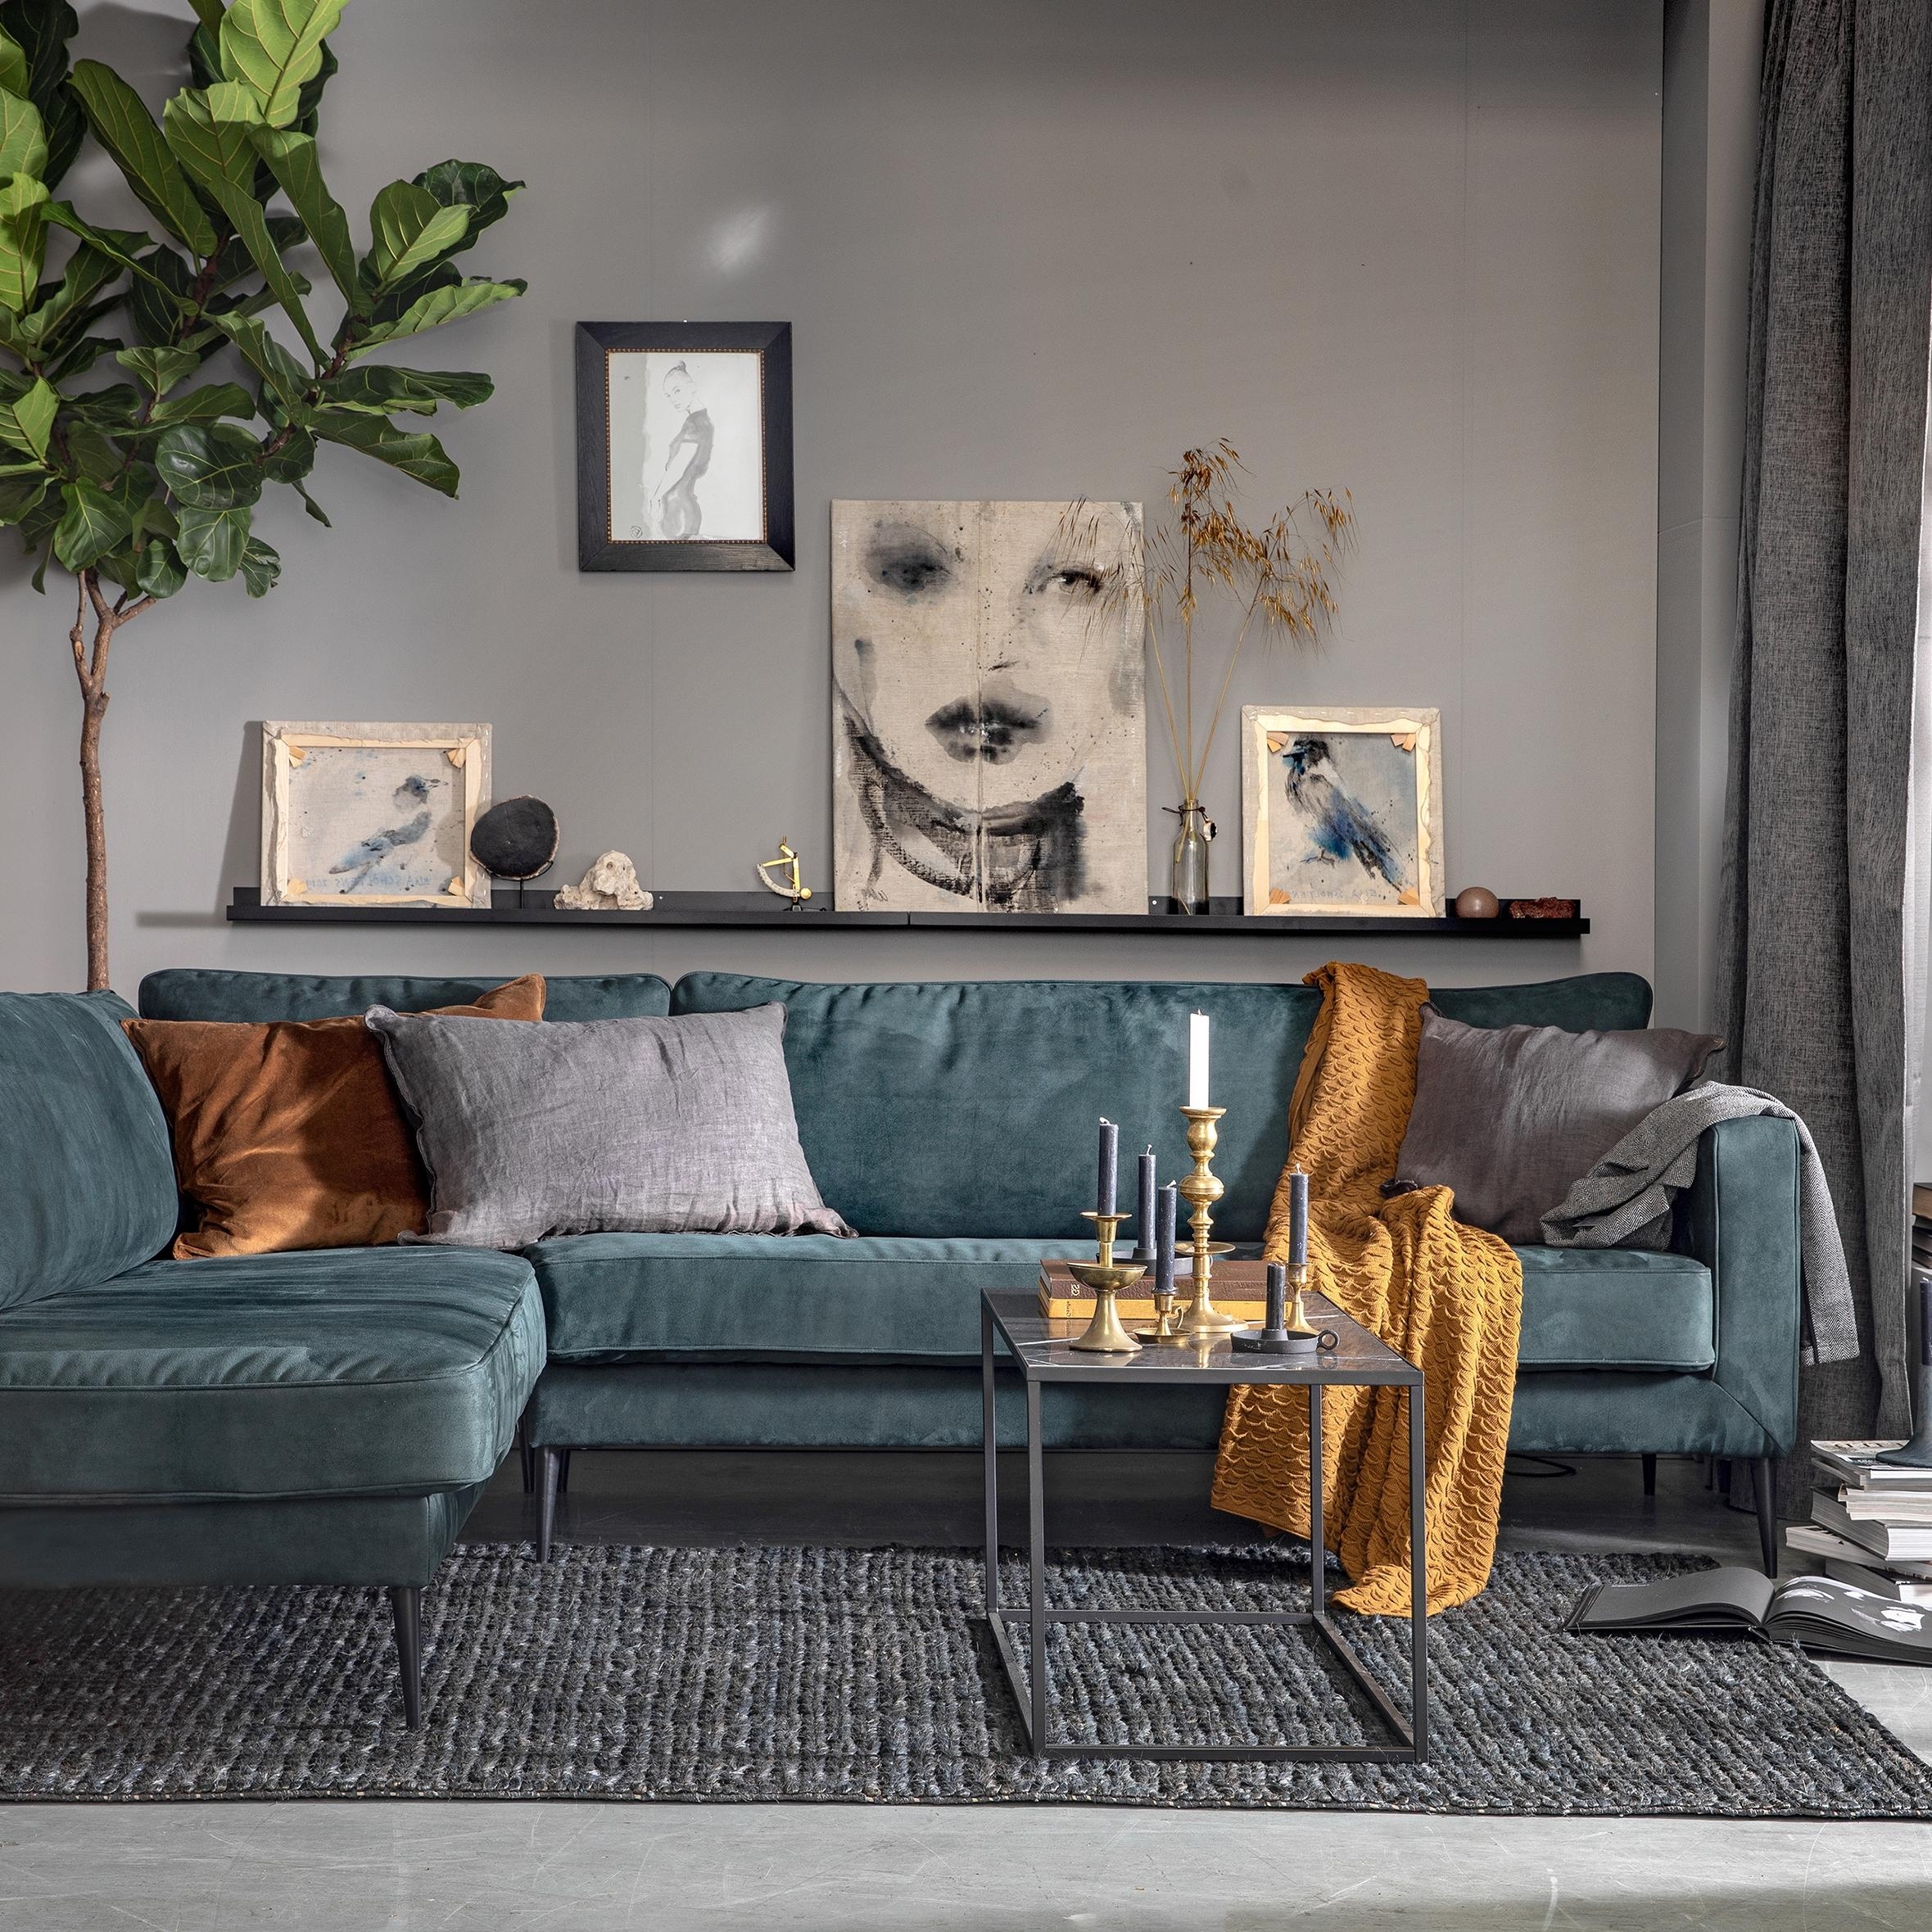 Ecksofa CREW...
#couchliebt #sofa #wohnzimmer #couch #livingroom #couchstyle